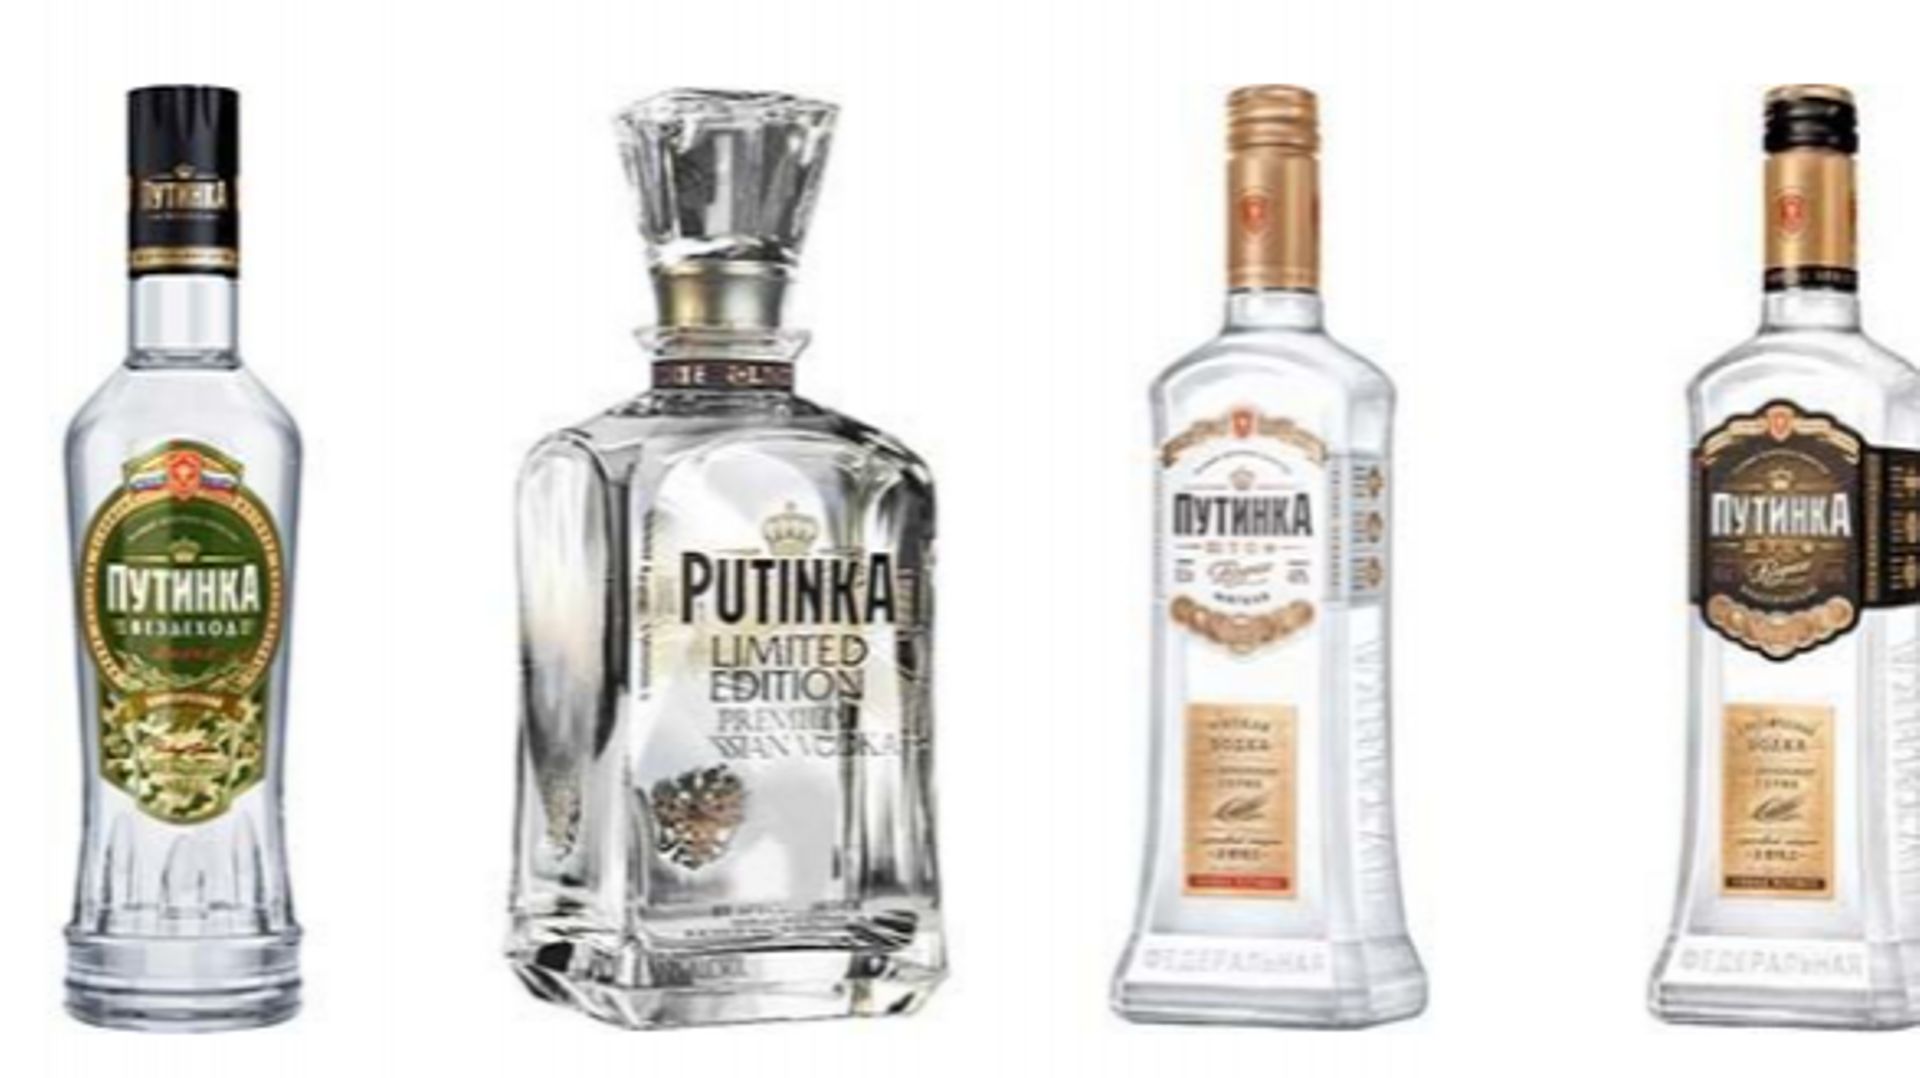 La gamme de vodka Putinka